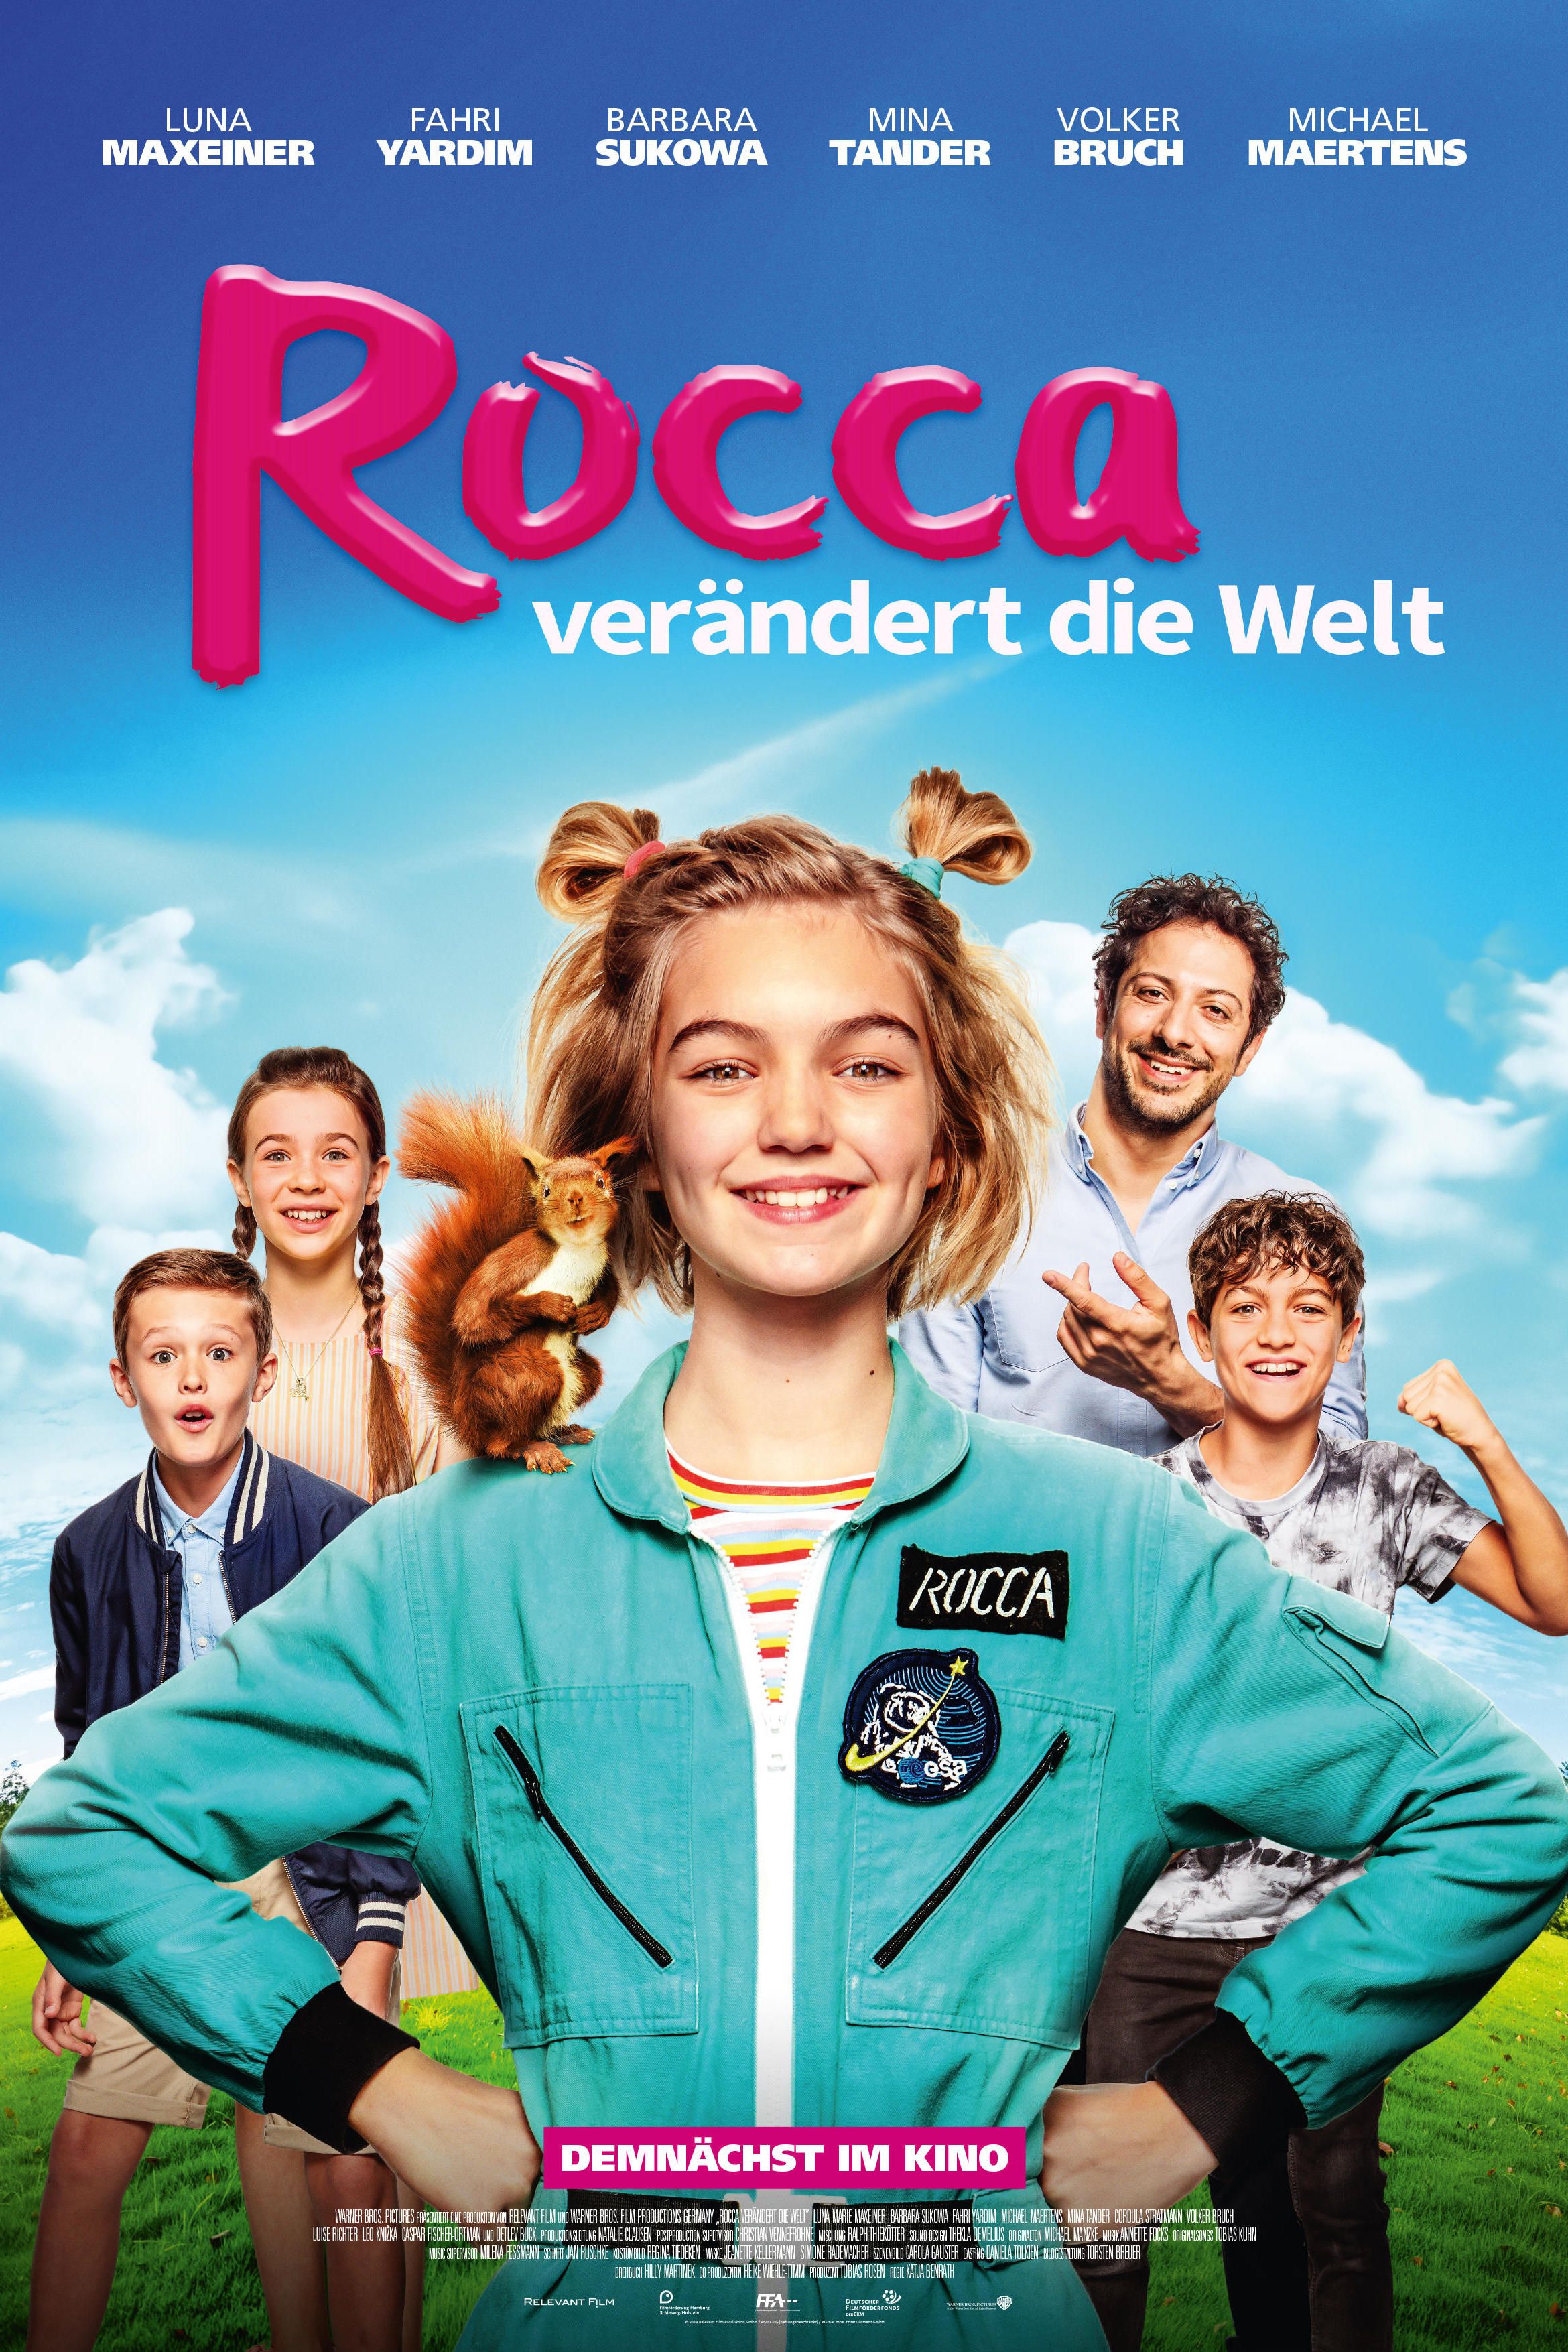 Rocca verändert die Welt Movie Information & Trailers | KinoCheck